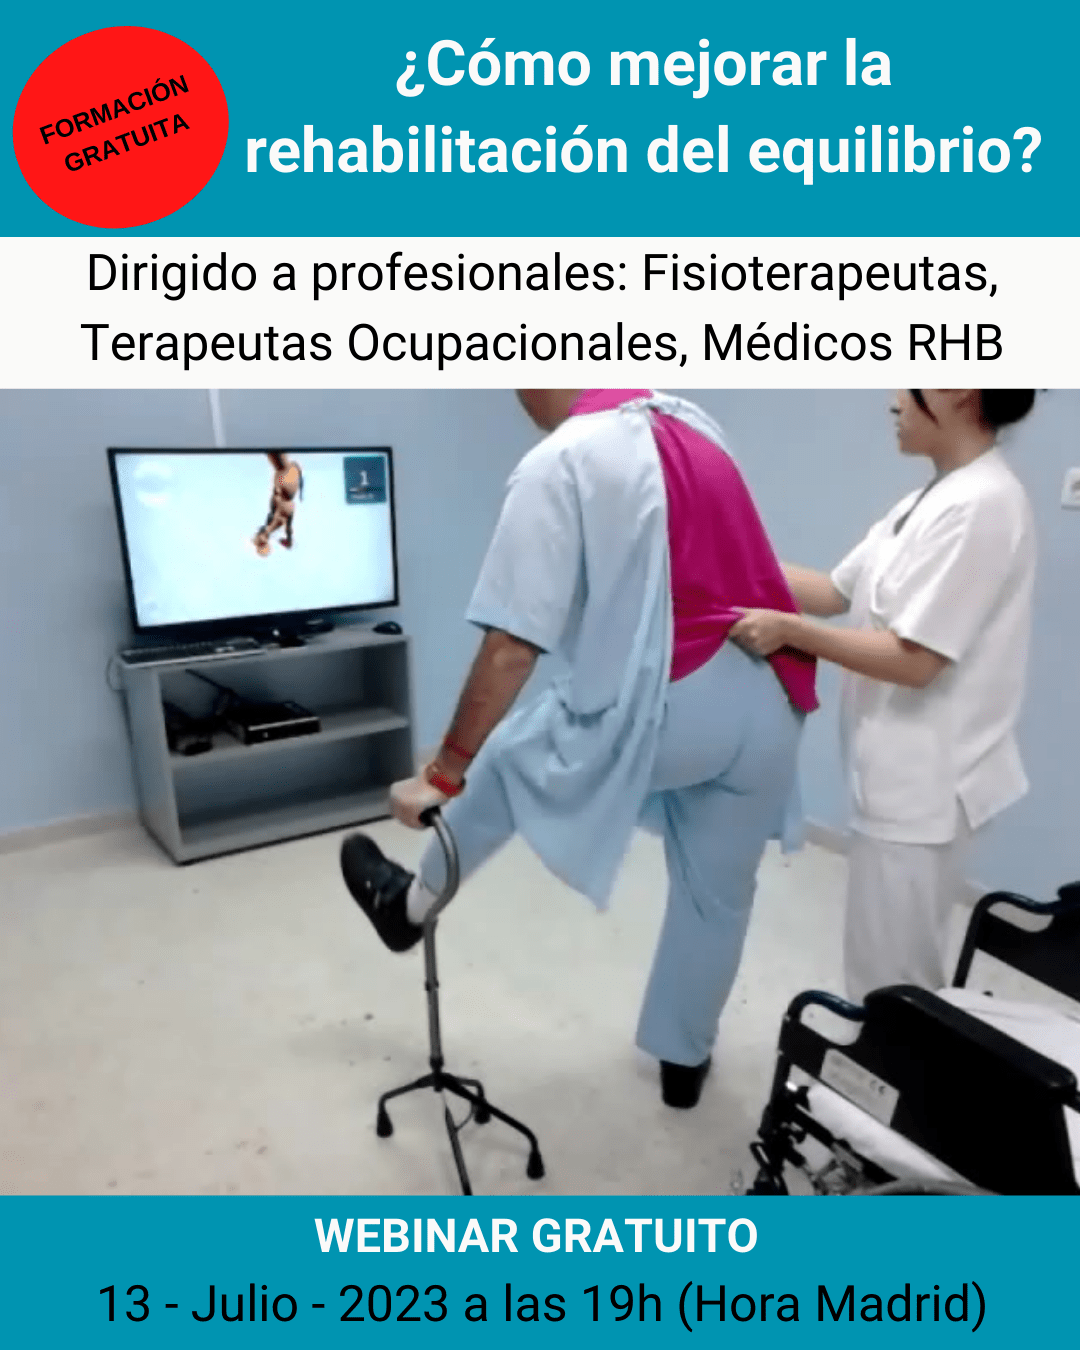 REHAMETRICS Webinar gratuito "Rehabilitación del Equilibrio"